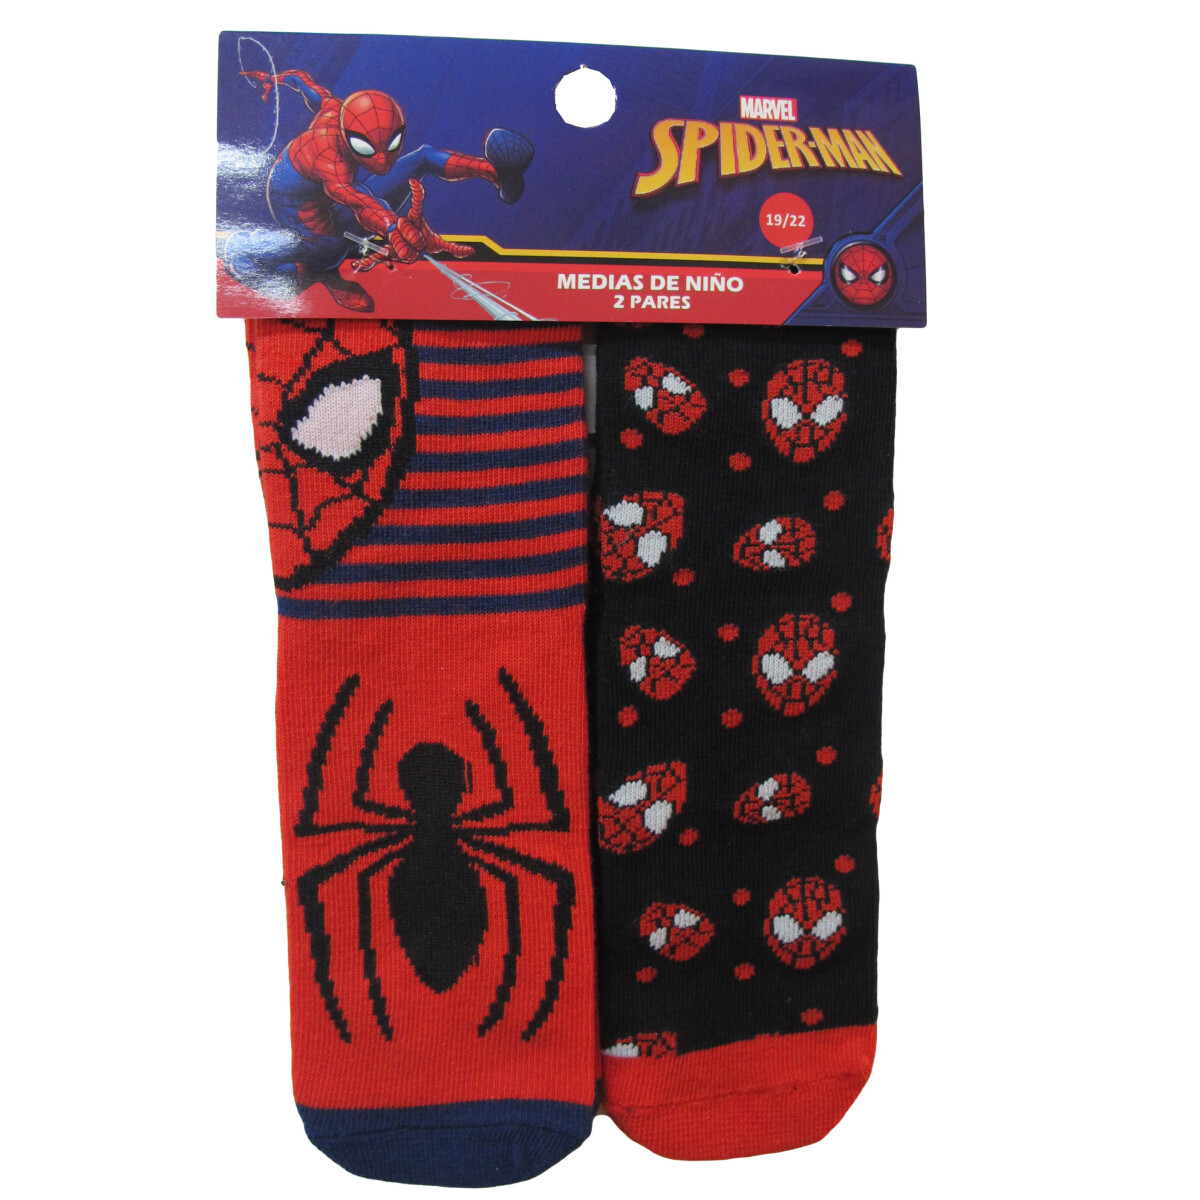 Medias x2 Spider Man Marvel - Rojo/Negro/Marino 